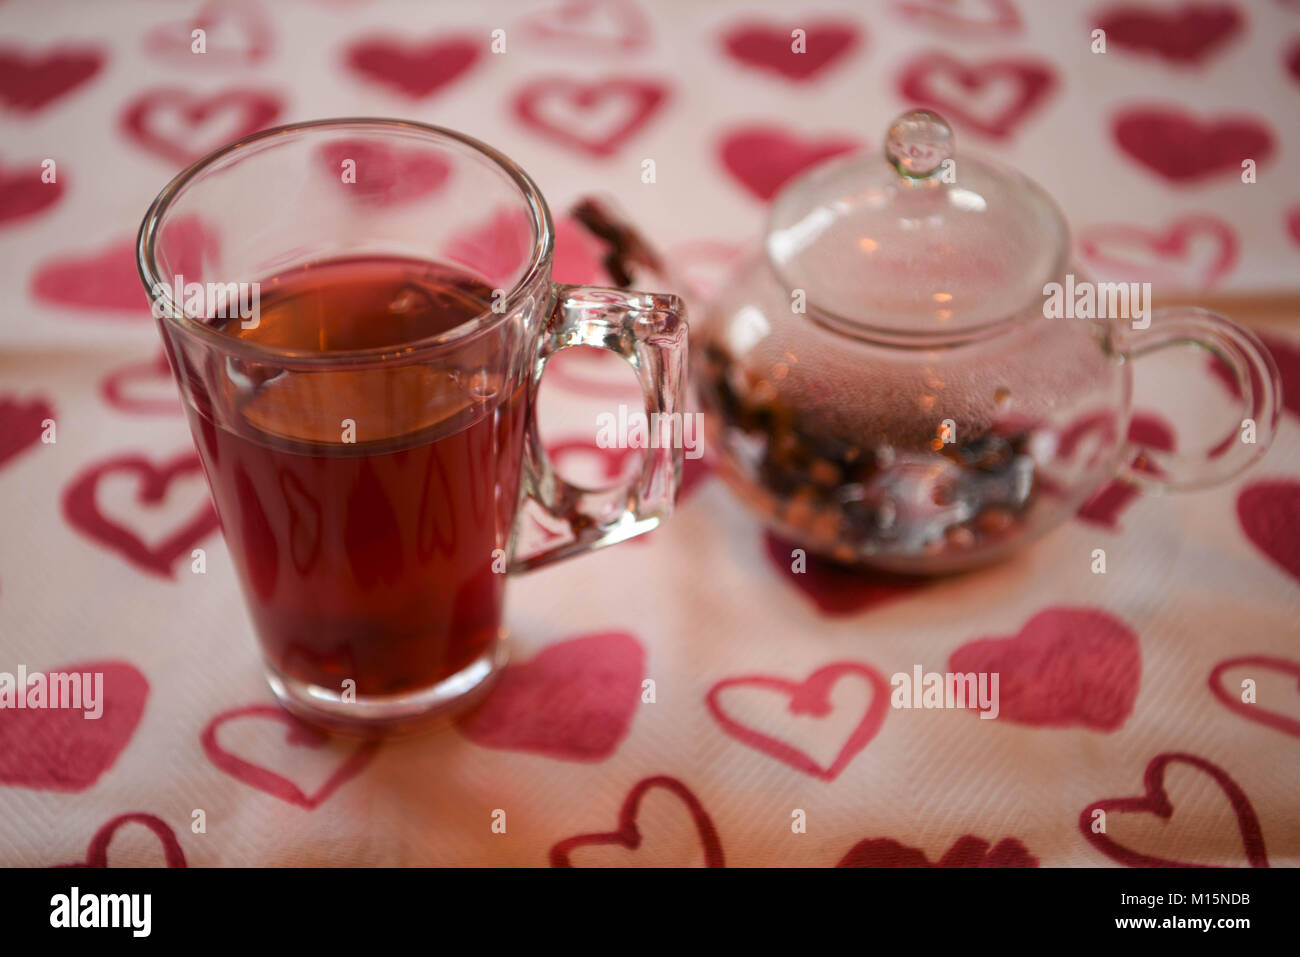 Trinken Bild eines gesunden hot Apple und Gewürz Aroma Früchtetee in einer Teekanne aus Glas mit Trinkglas und auf einem roten Liebe Herz Muster Tischdecke Stockfoto